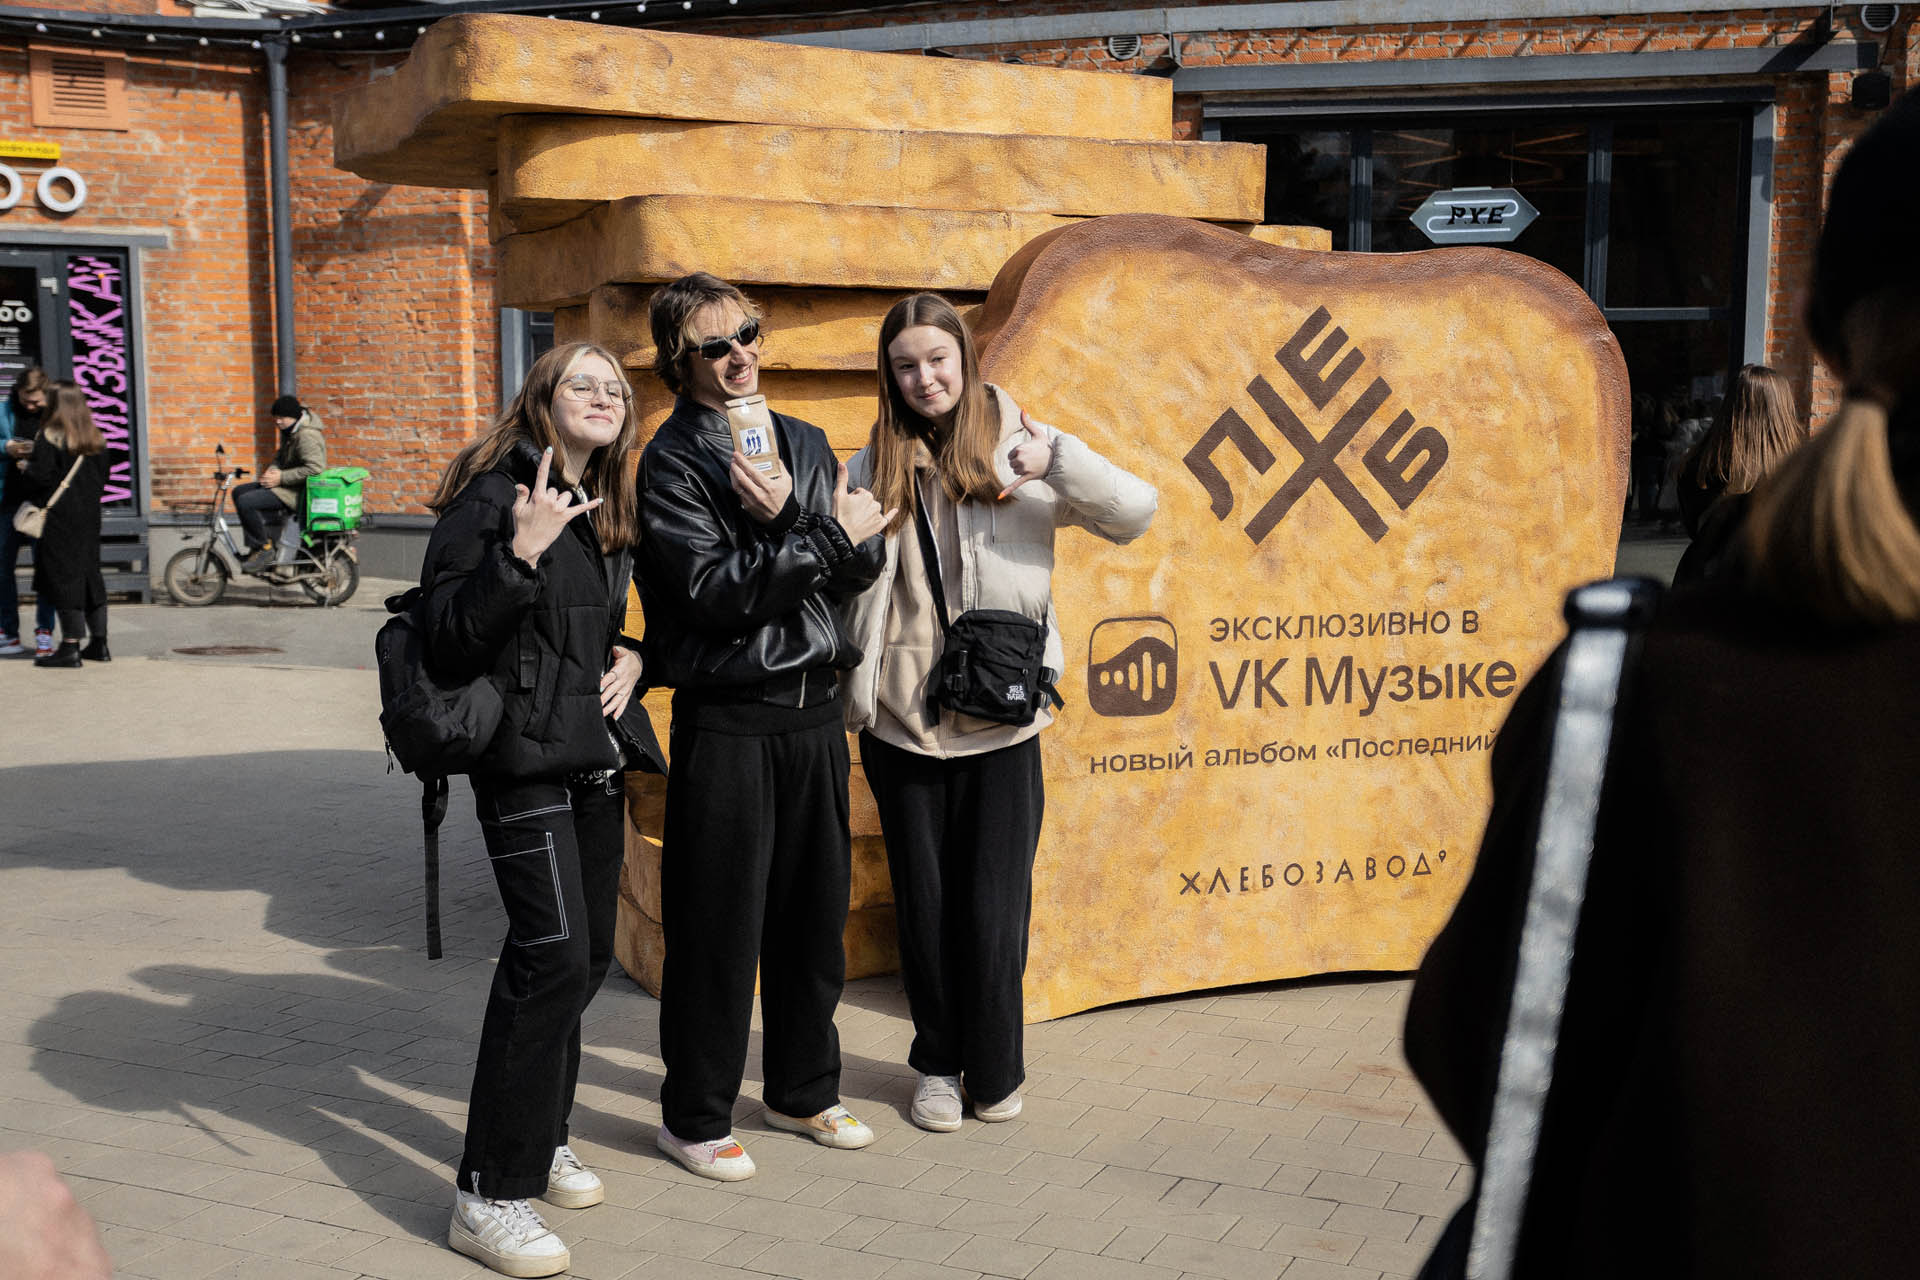 В честь выхода нового альбома группы ХЛЕБ 1 апреля VK Музыка установила «памятник» артистам на Хлебозаводе